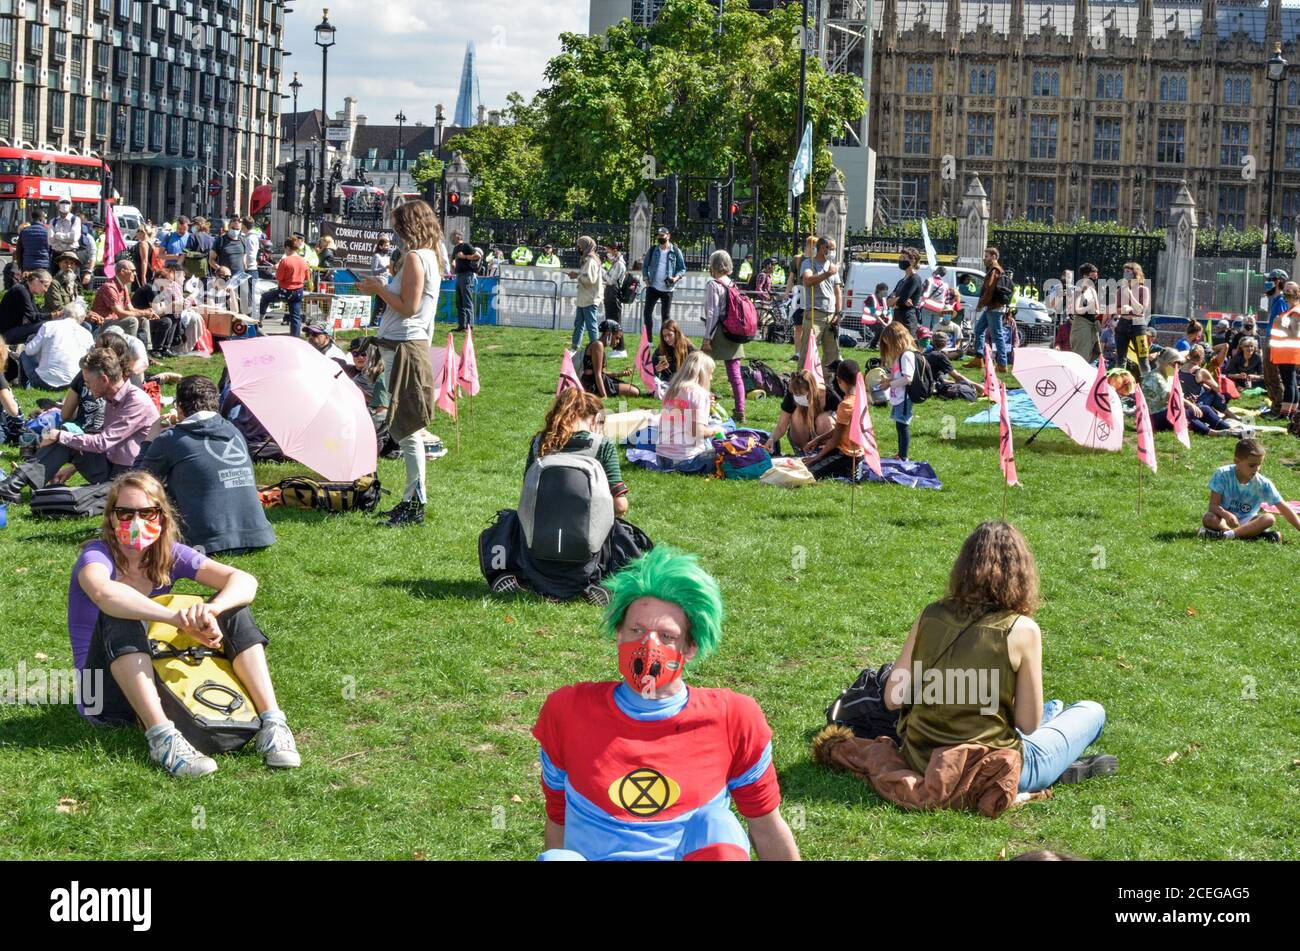 Migliaia di manifestanti della ribellione estinzione convergono su Parliament Square, nel centro di Londra, bloccando le strade all'interno e all'esterno dell'area, chiedendo al governo di ascoltare la loro richiesta di un'assemblea dei cittadini per affrontare il cambiamento climatico. Foto Stock